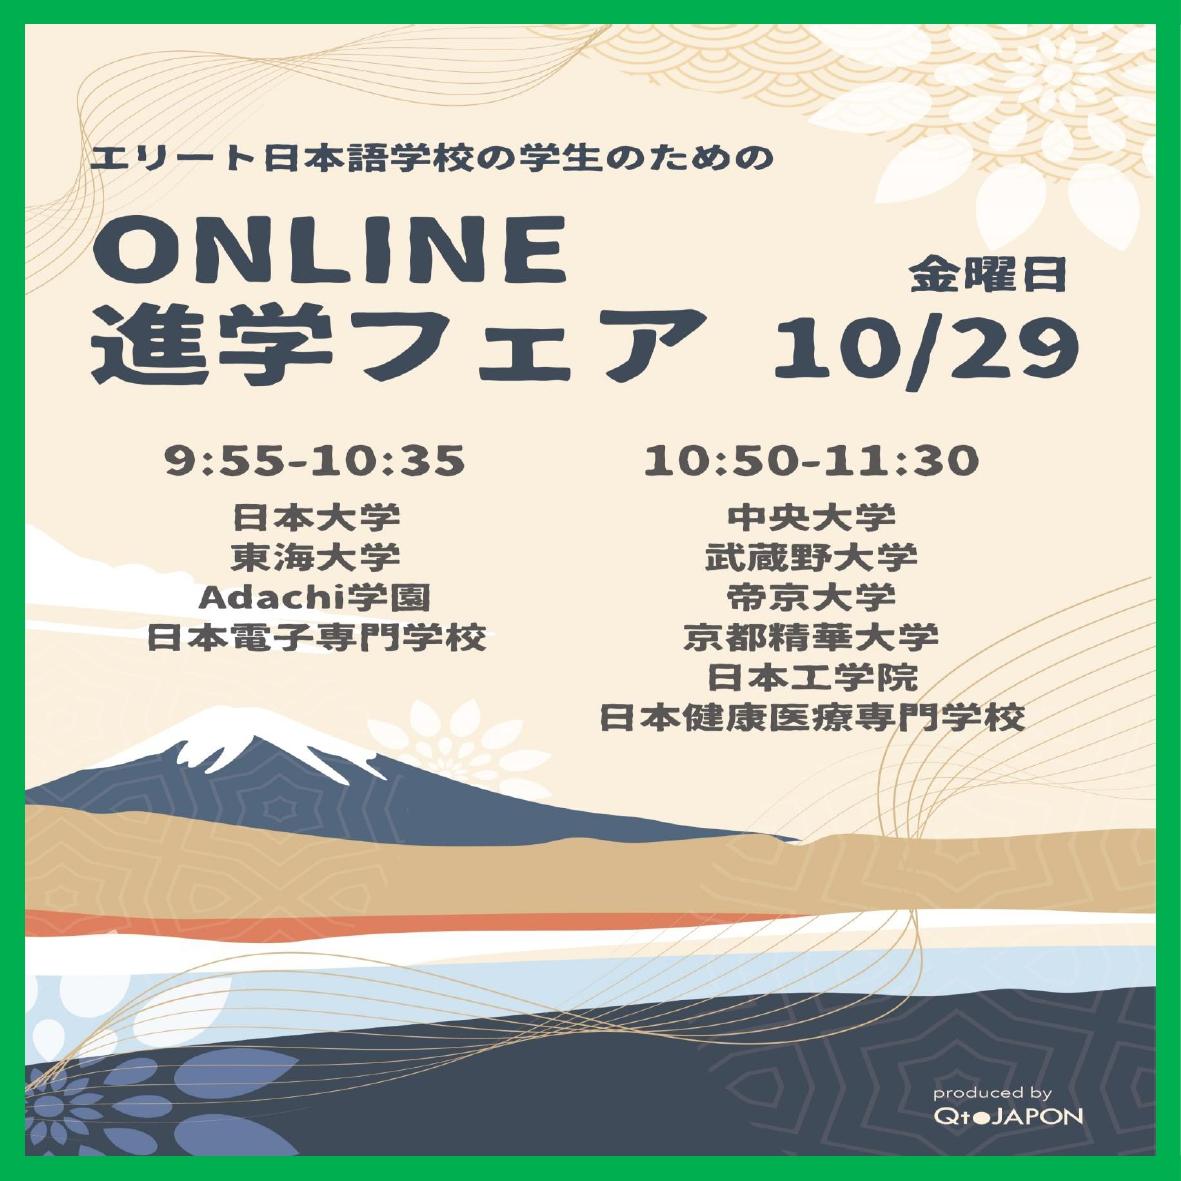 Online University Information Fair (October 29th )